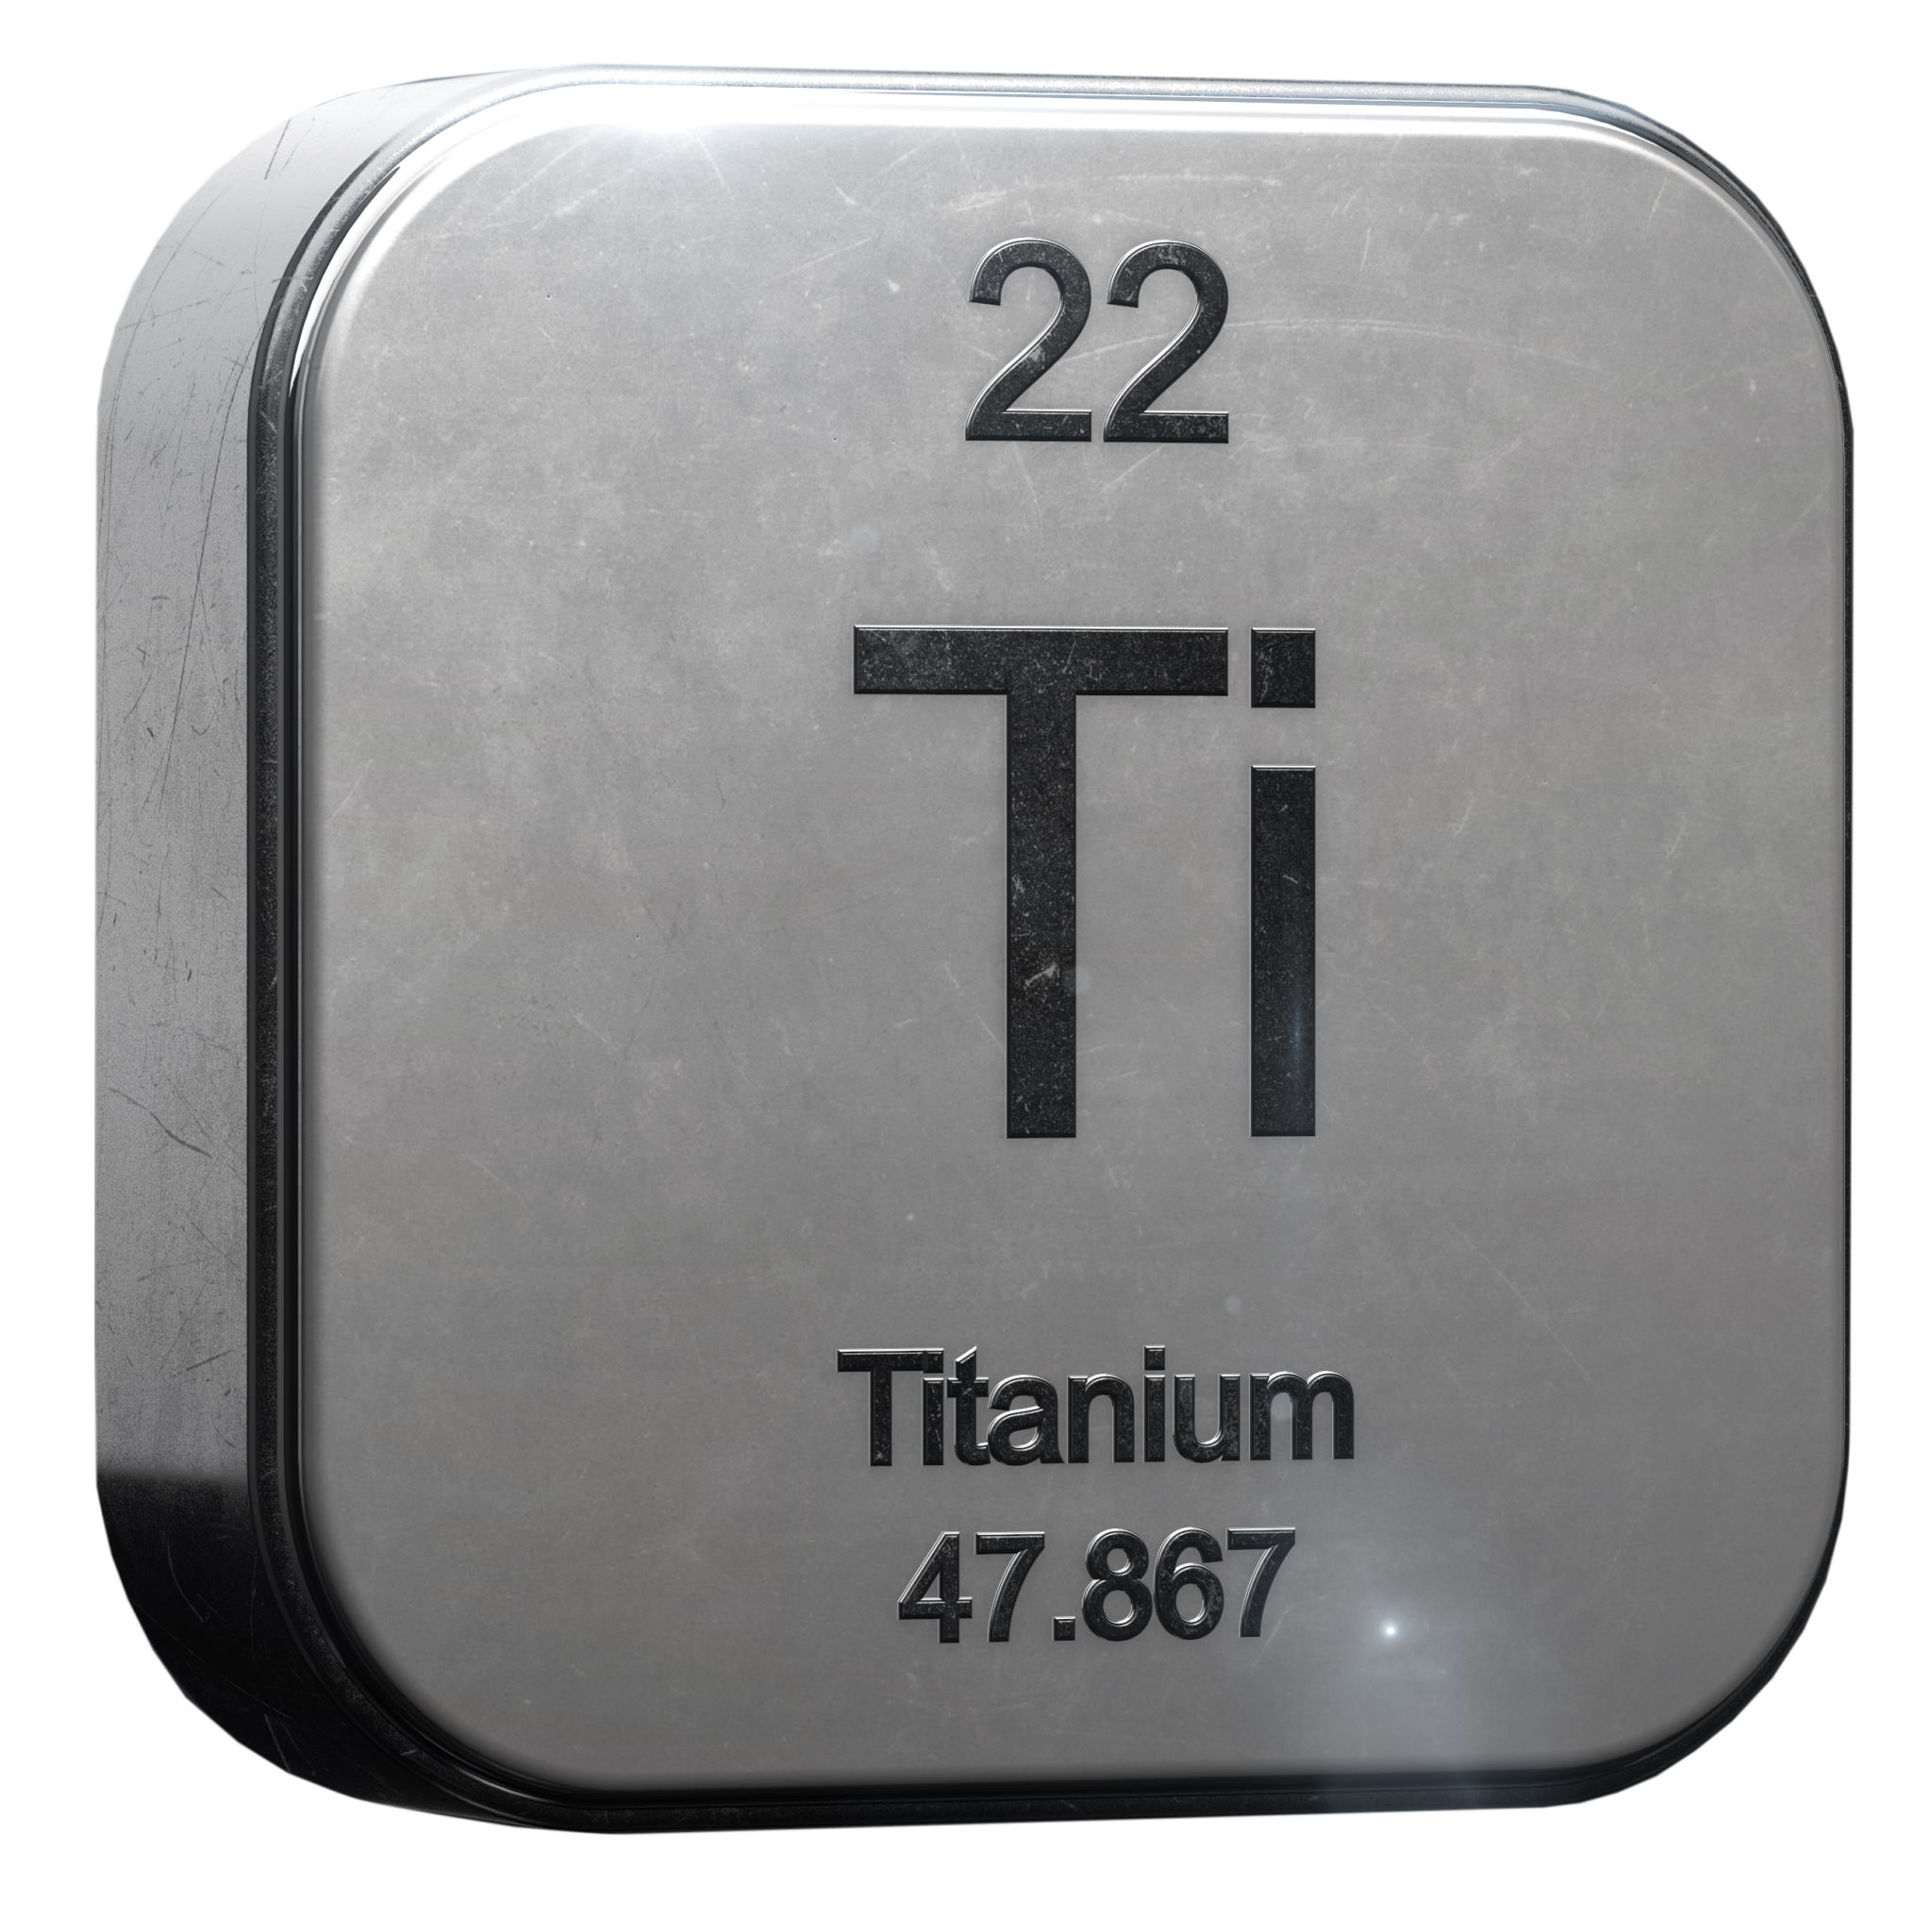 Titanium. Титан Titanium. Титан (элемент). Титан хим элемент. Химический элемент Тетон.